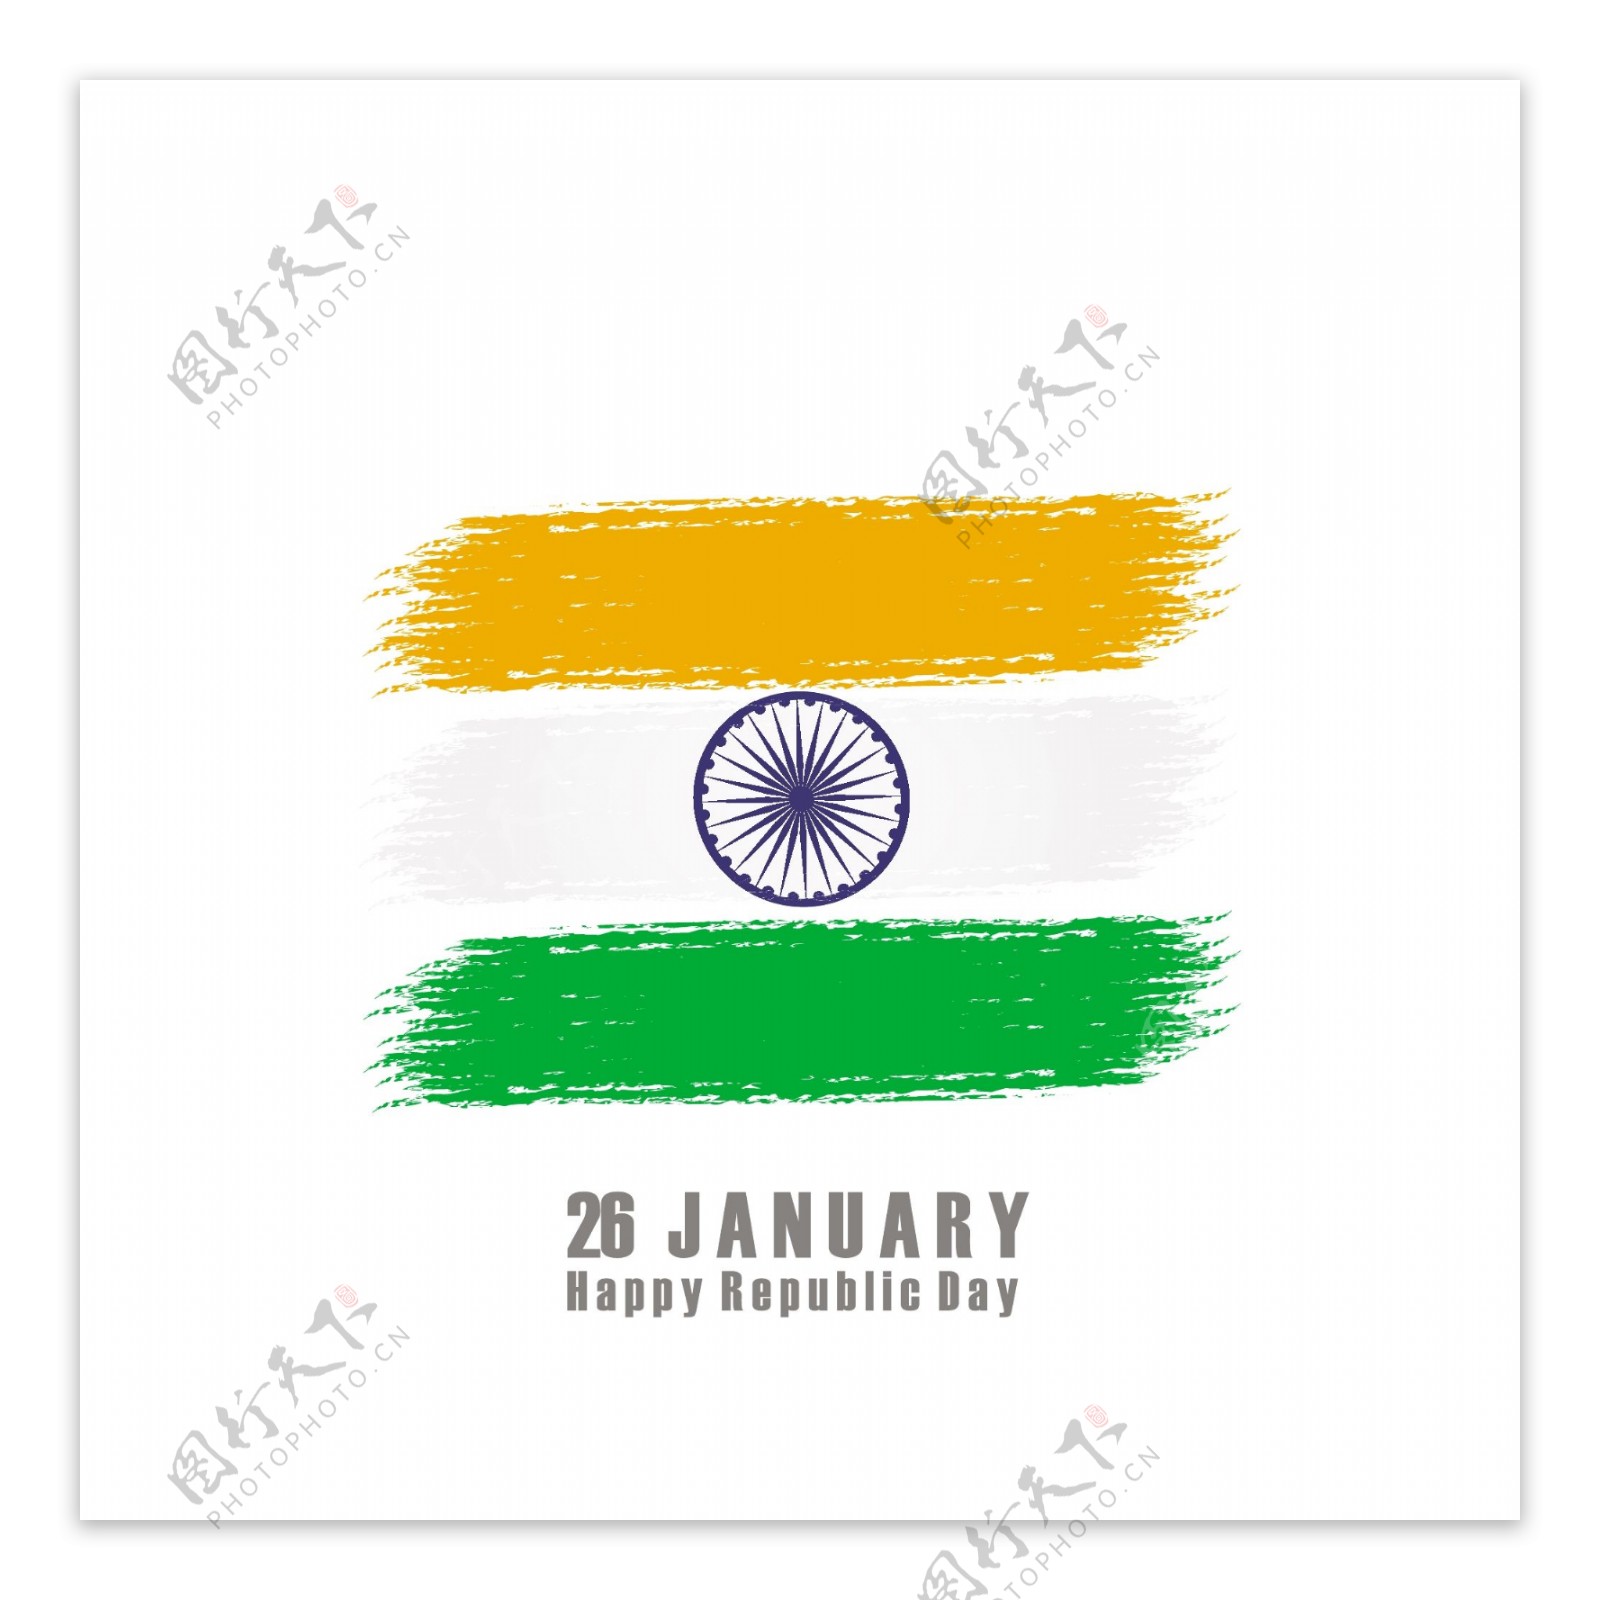 印度独立日背景